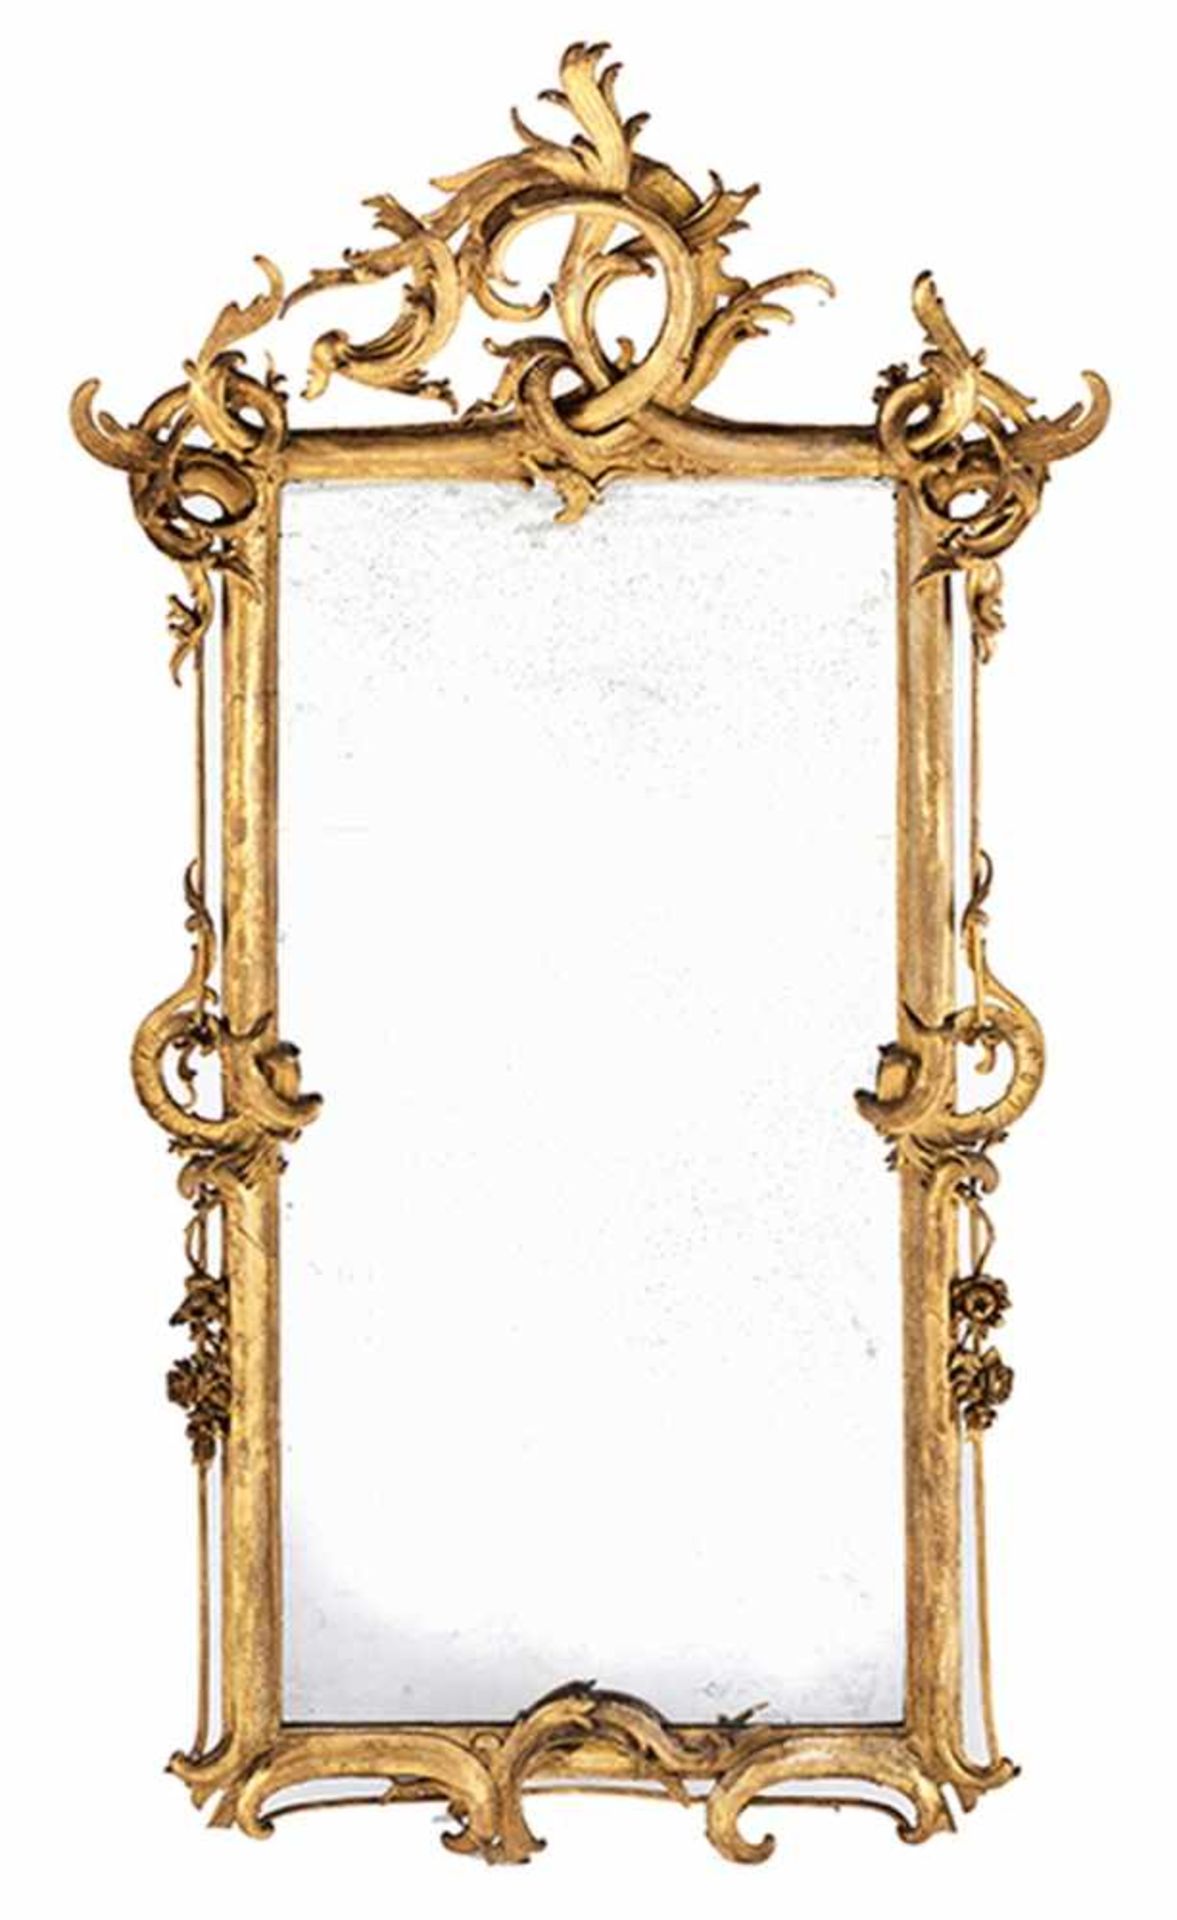 Großer Barock-Spiegel Höhe: 214 cm. Breite: 112,5 cm. Weichholz, geschnitzt, vergoldet. - Bild 3 aus 3